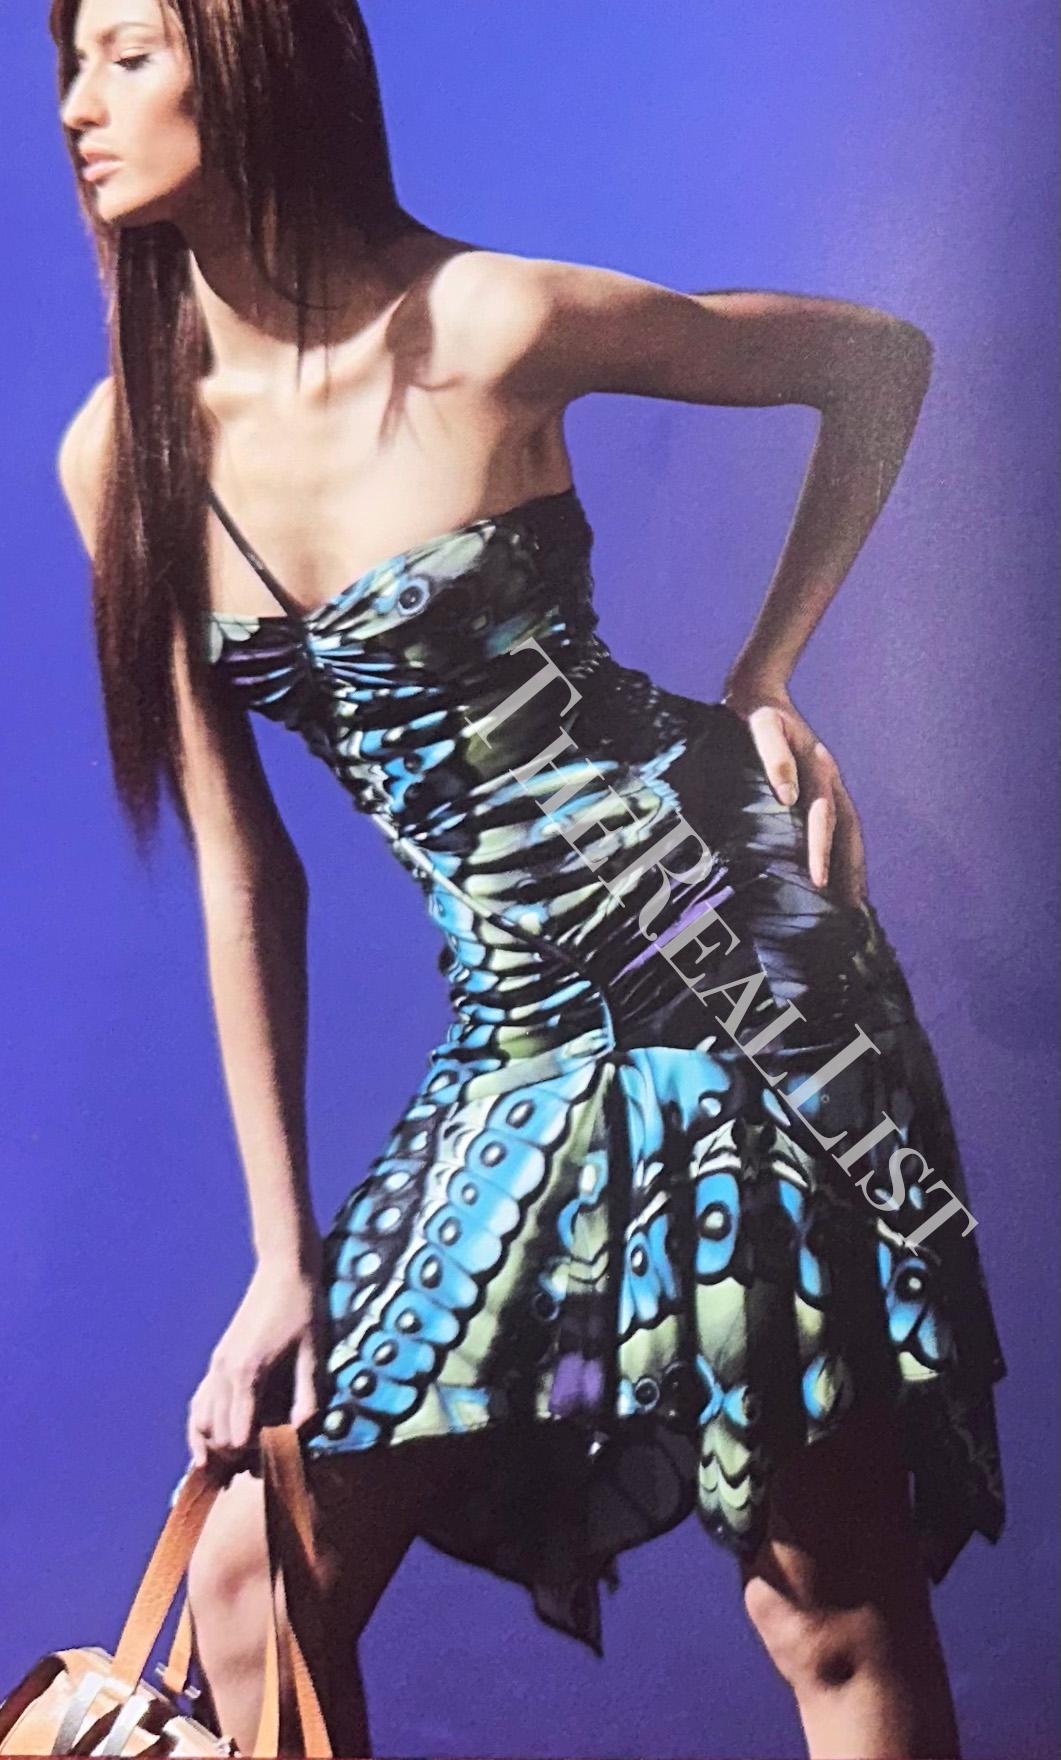 Nous vous présentons une superbe mini robe bleue à imprimé papillon Versace, créée par Donatella Versace. Issue de la collection Automne/Hiver 2003, cette robe à l'imprimé vibrant d'ailes de papillon crée un attrait visuel audacieux, rehaussé par